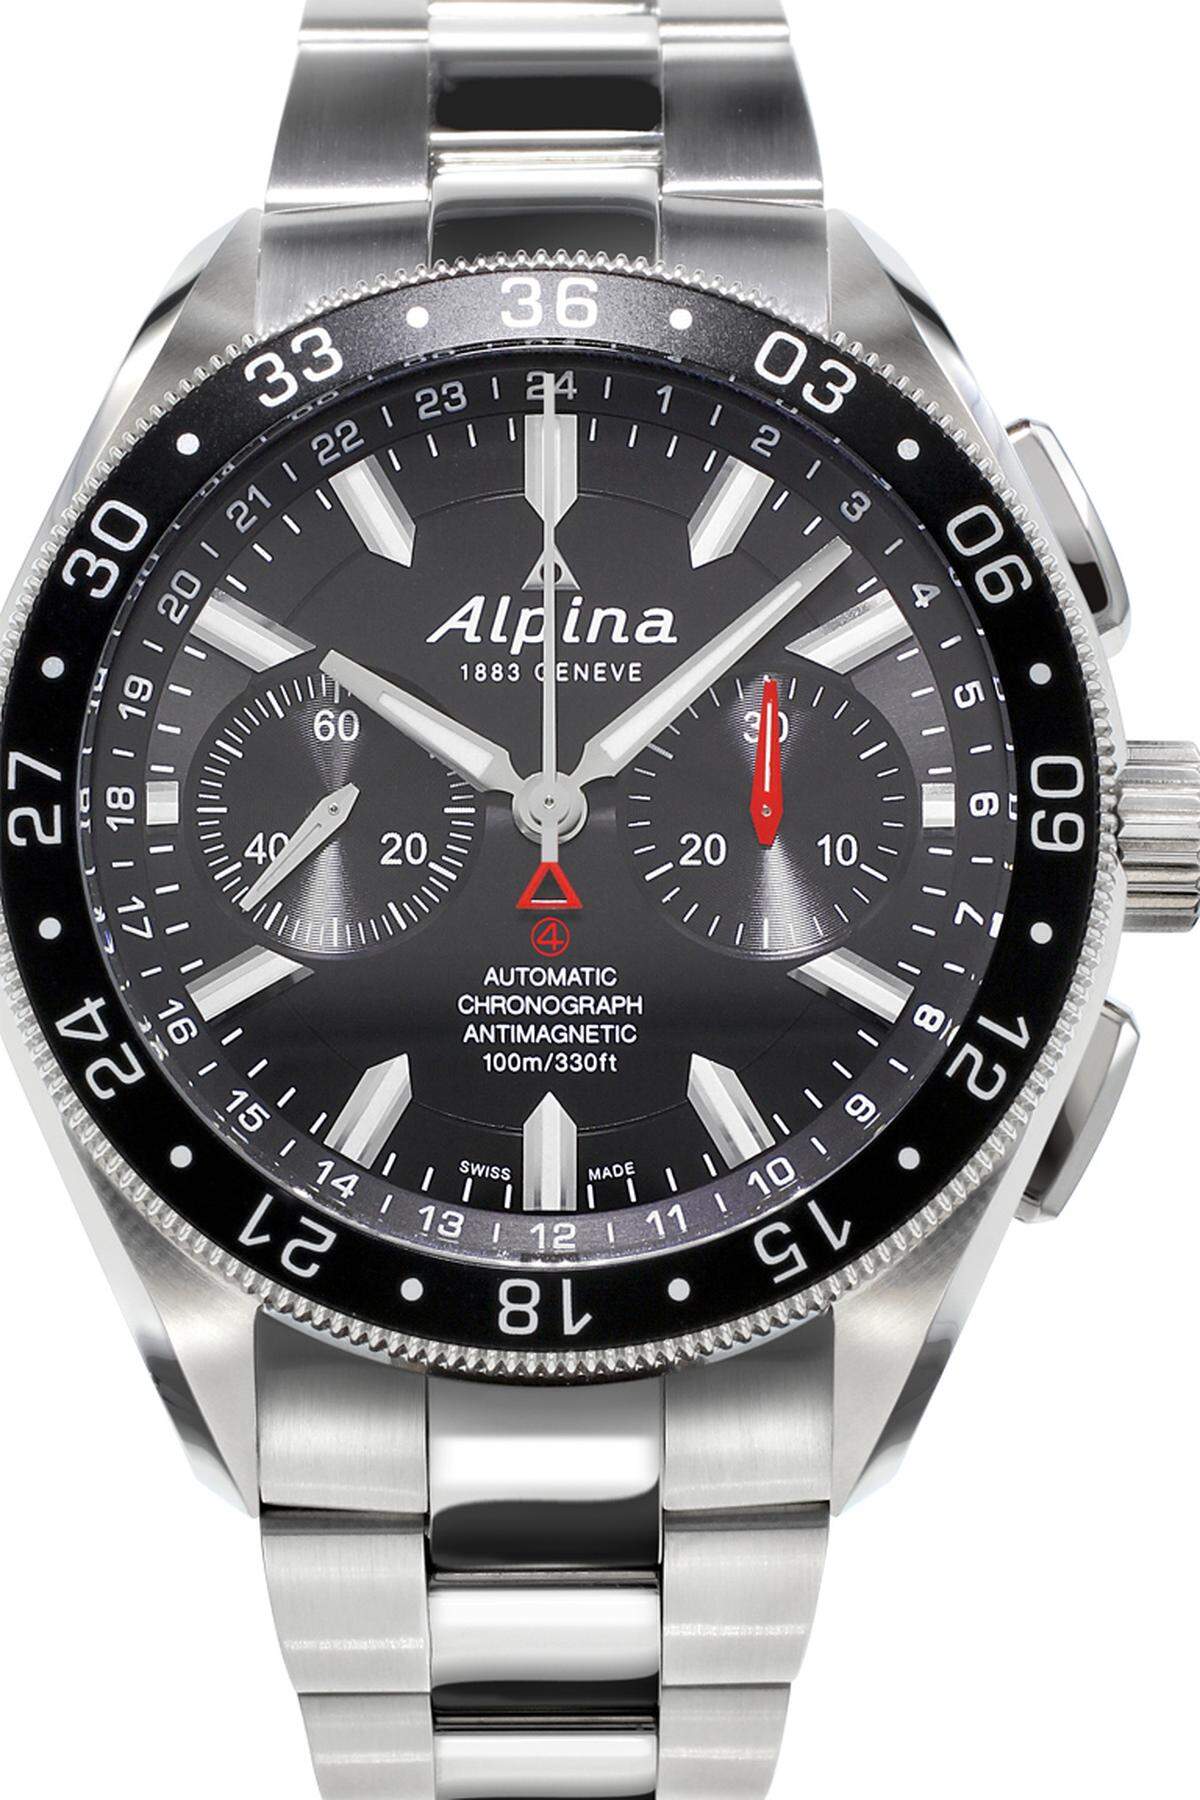 Alpina, „Alpiner4 Chronograph“. Gutes Design gepaart mit tadelloser Qualität, und das zu einem wohlfeilen Preis. Unter Garantie einer jener aktuell gefertigten Chronografen mit einem guten Preis-Leistungs-Verhältnis.